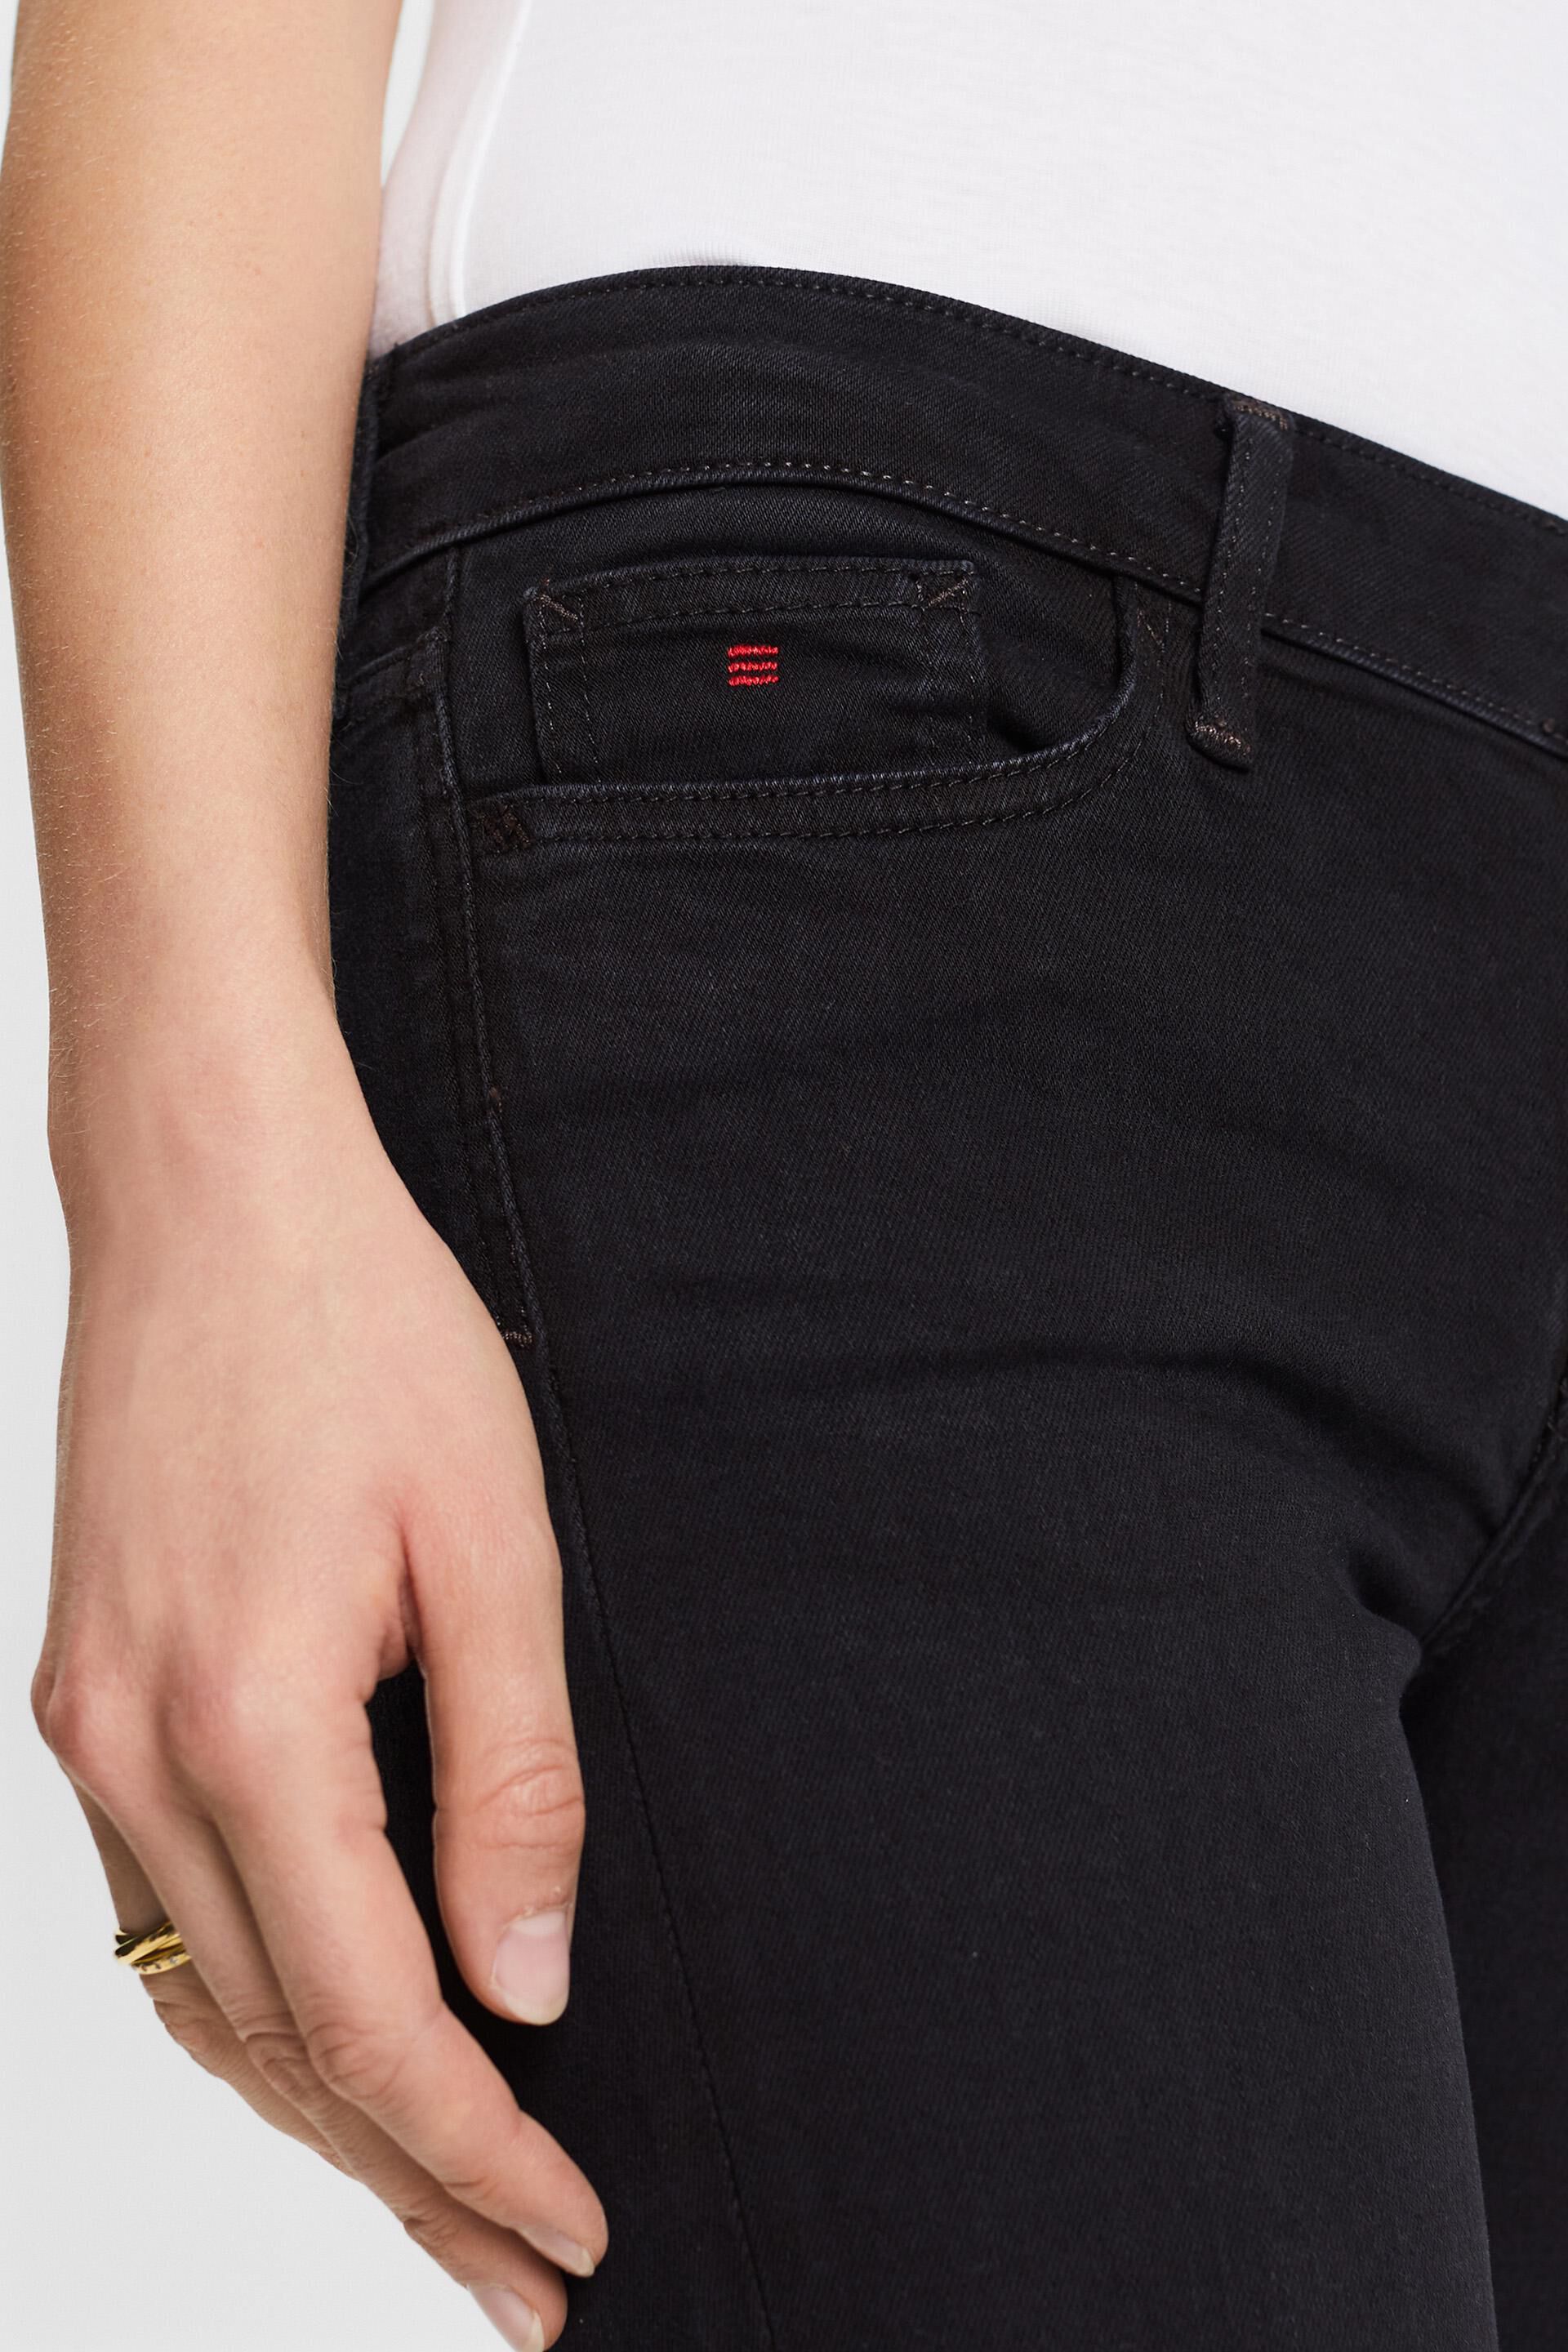 Esprit Damen Hochwertige Skinny-Fit-Jeans mit mittelhohem Bund